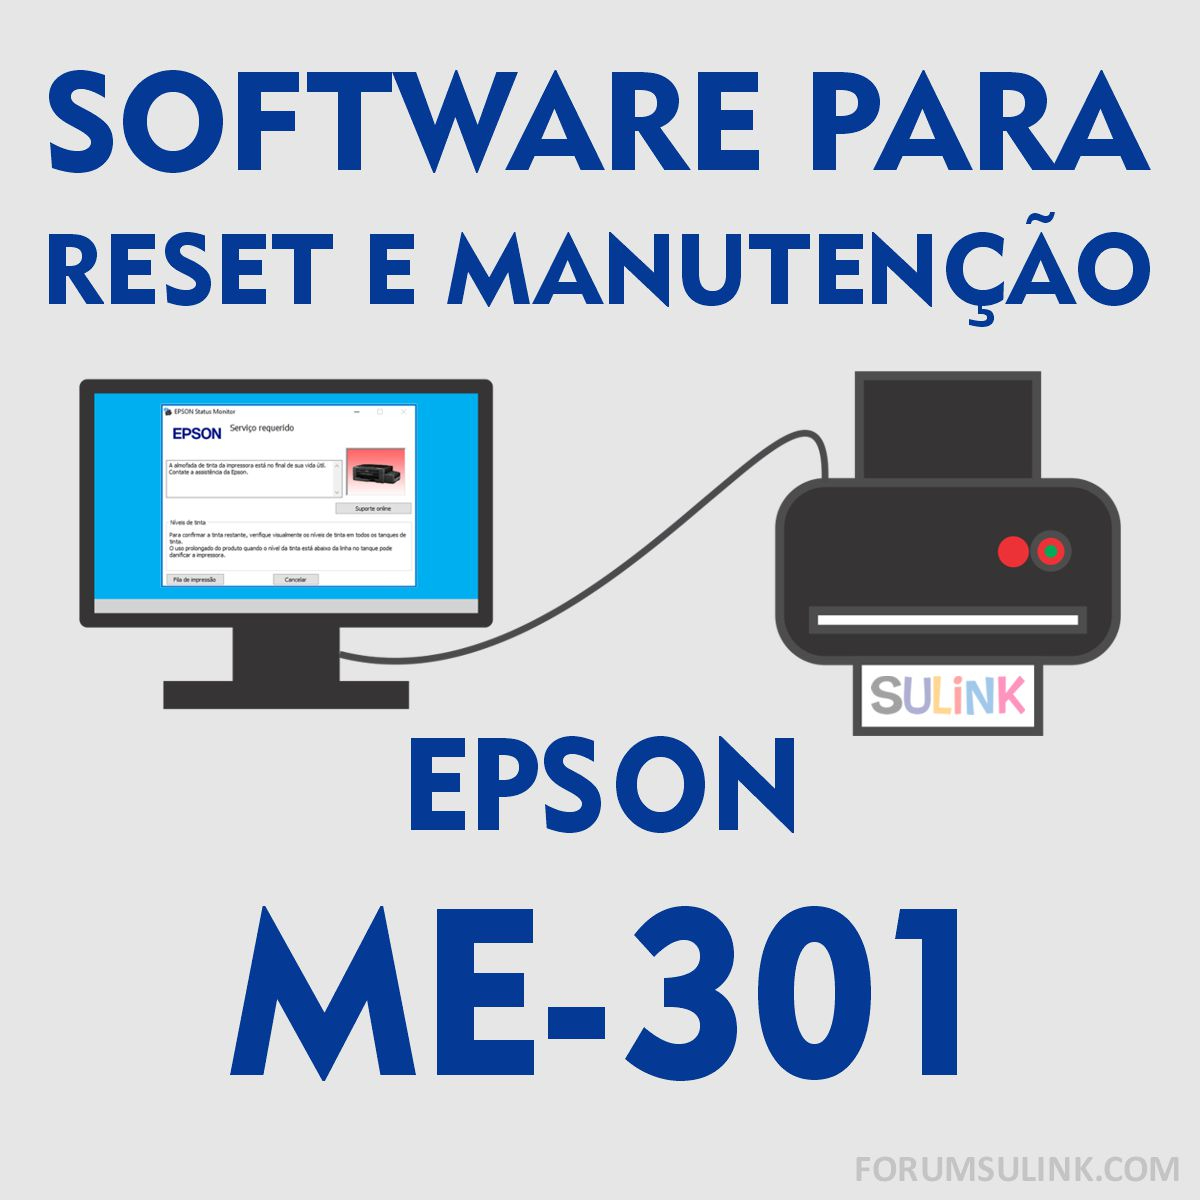 Epson ME-301 | Software para Reset das Almofadas e Manutenção